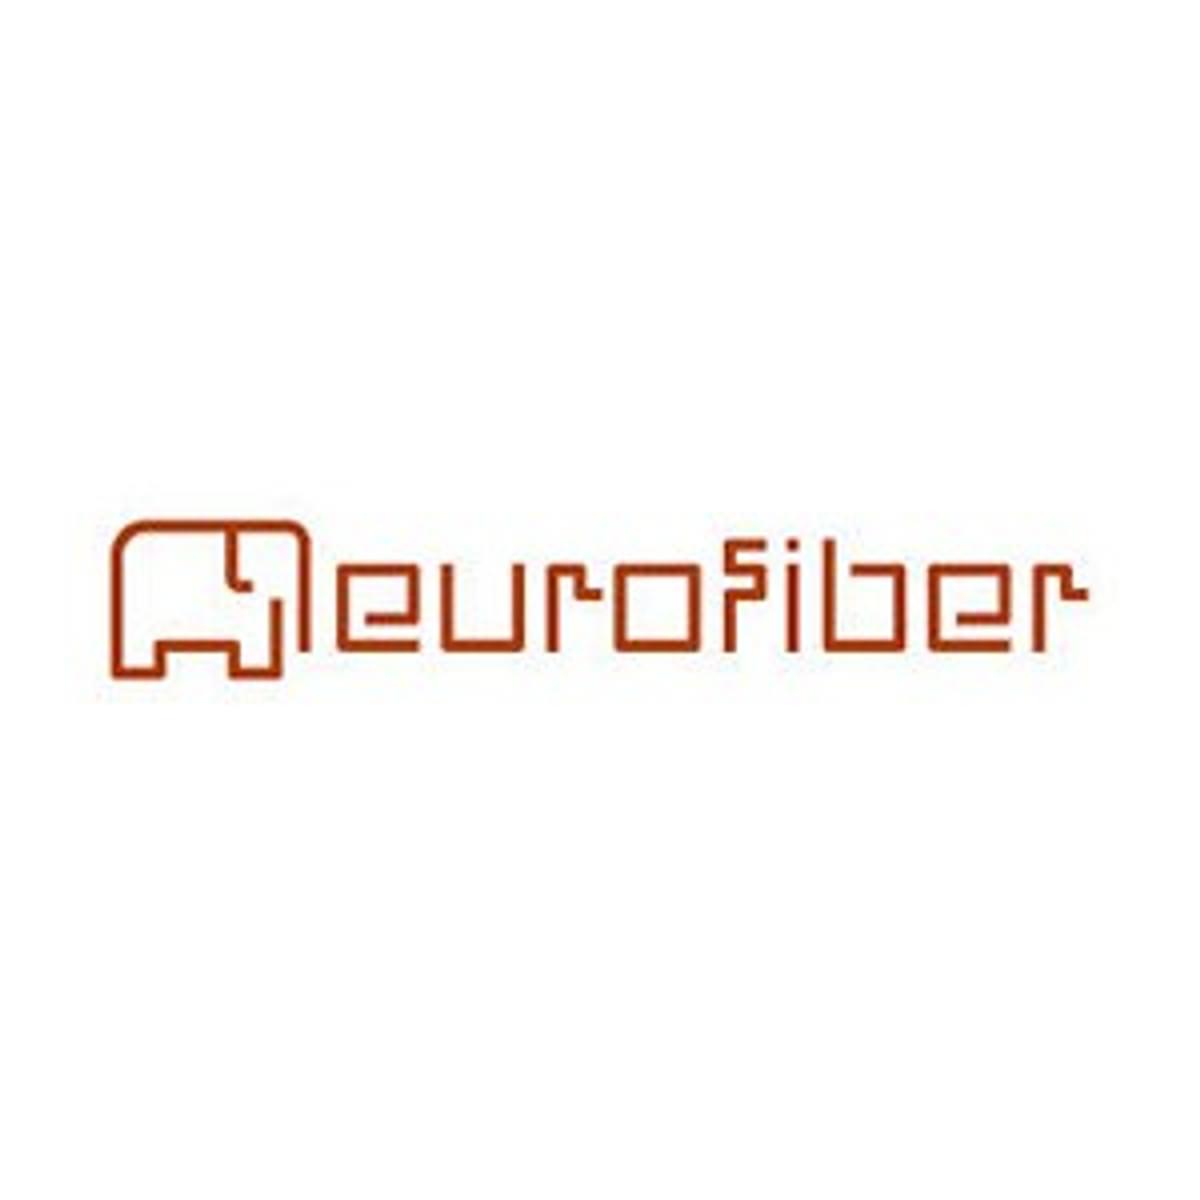 Eurofiber rondt eerste fase uitrol fijnmazig glasvezelnetwerk gemeente Rotterdam af image